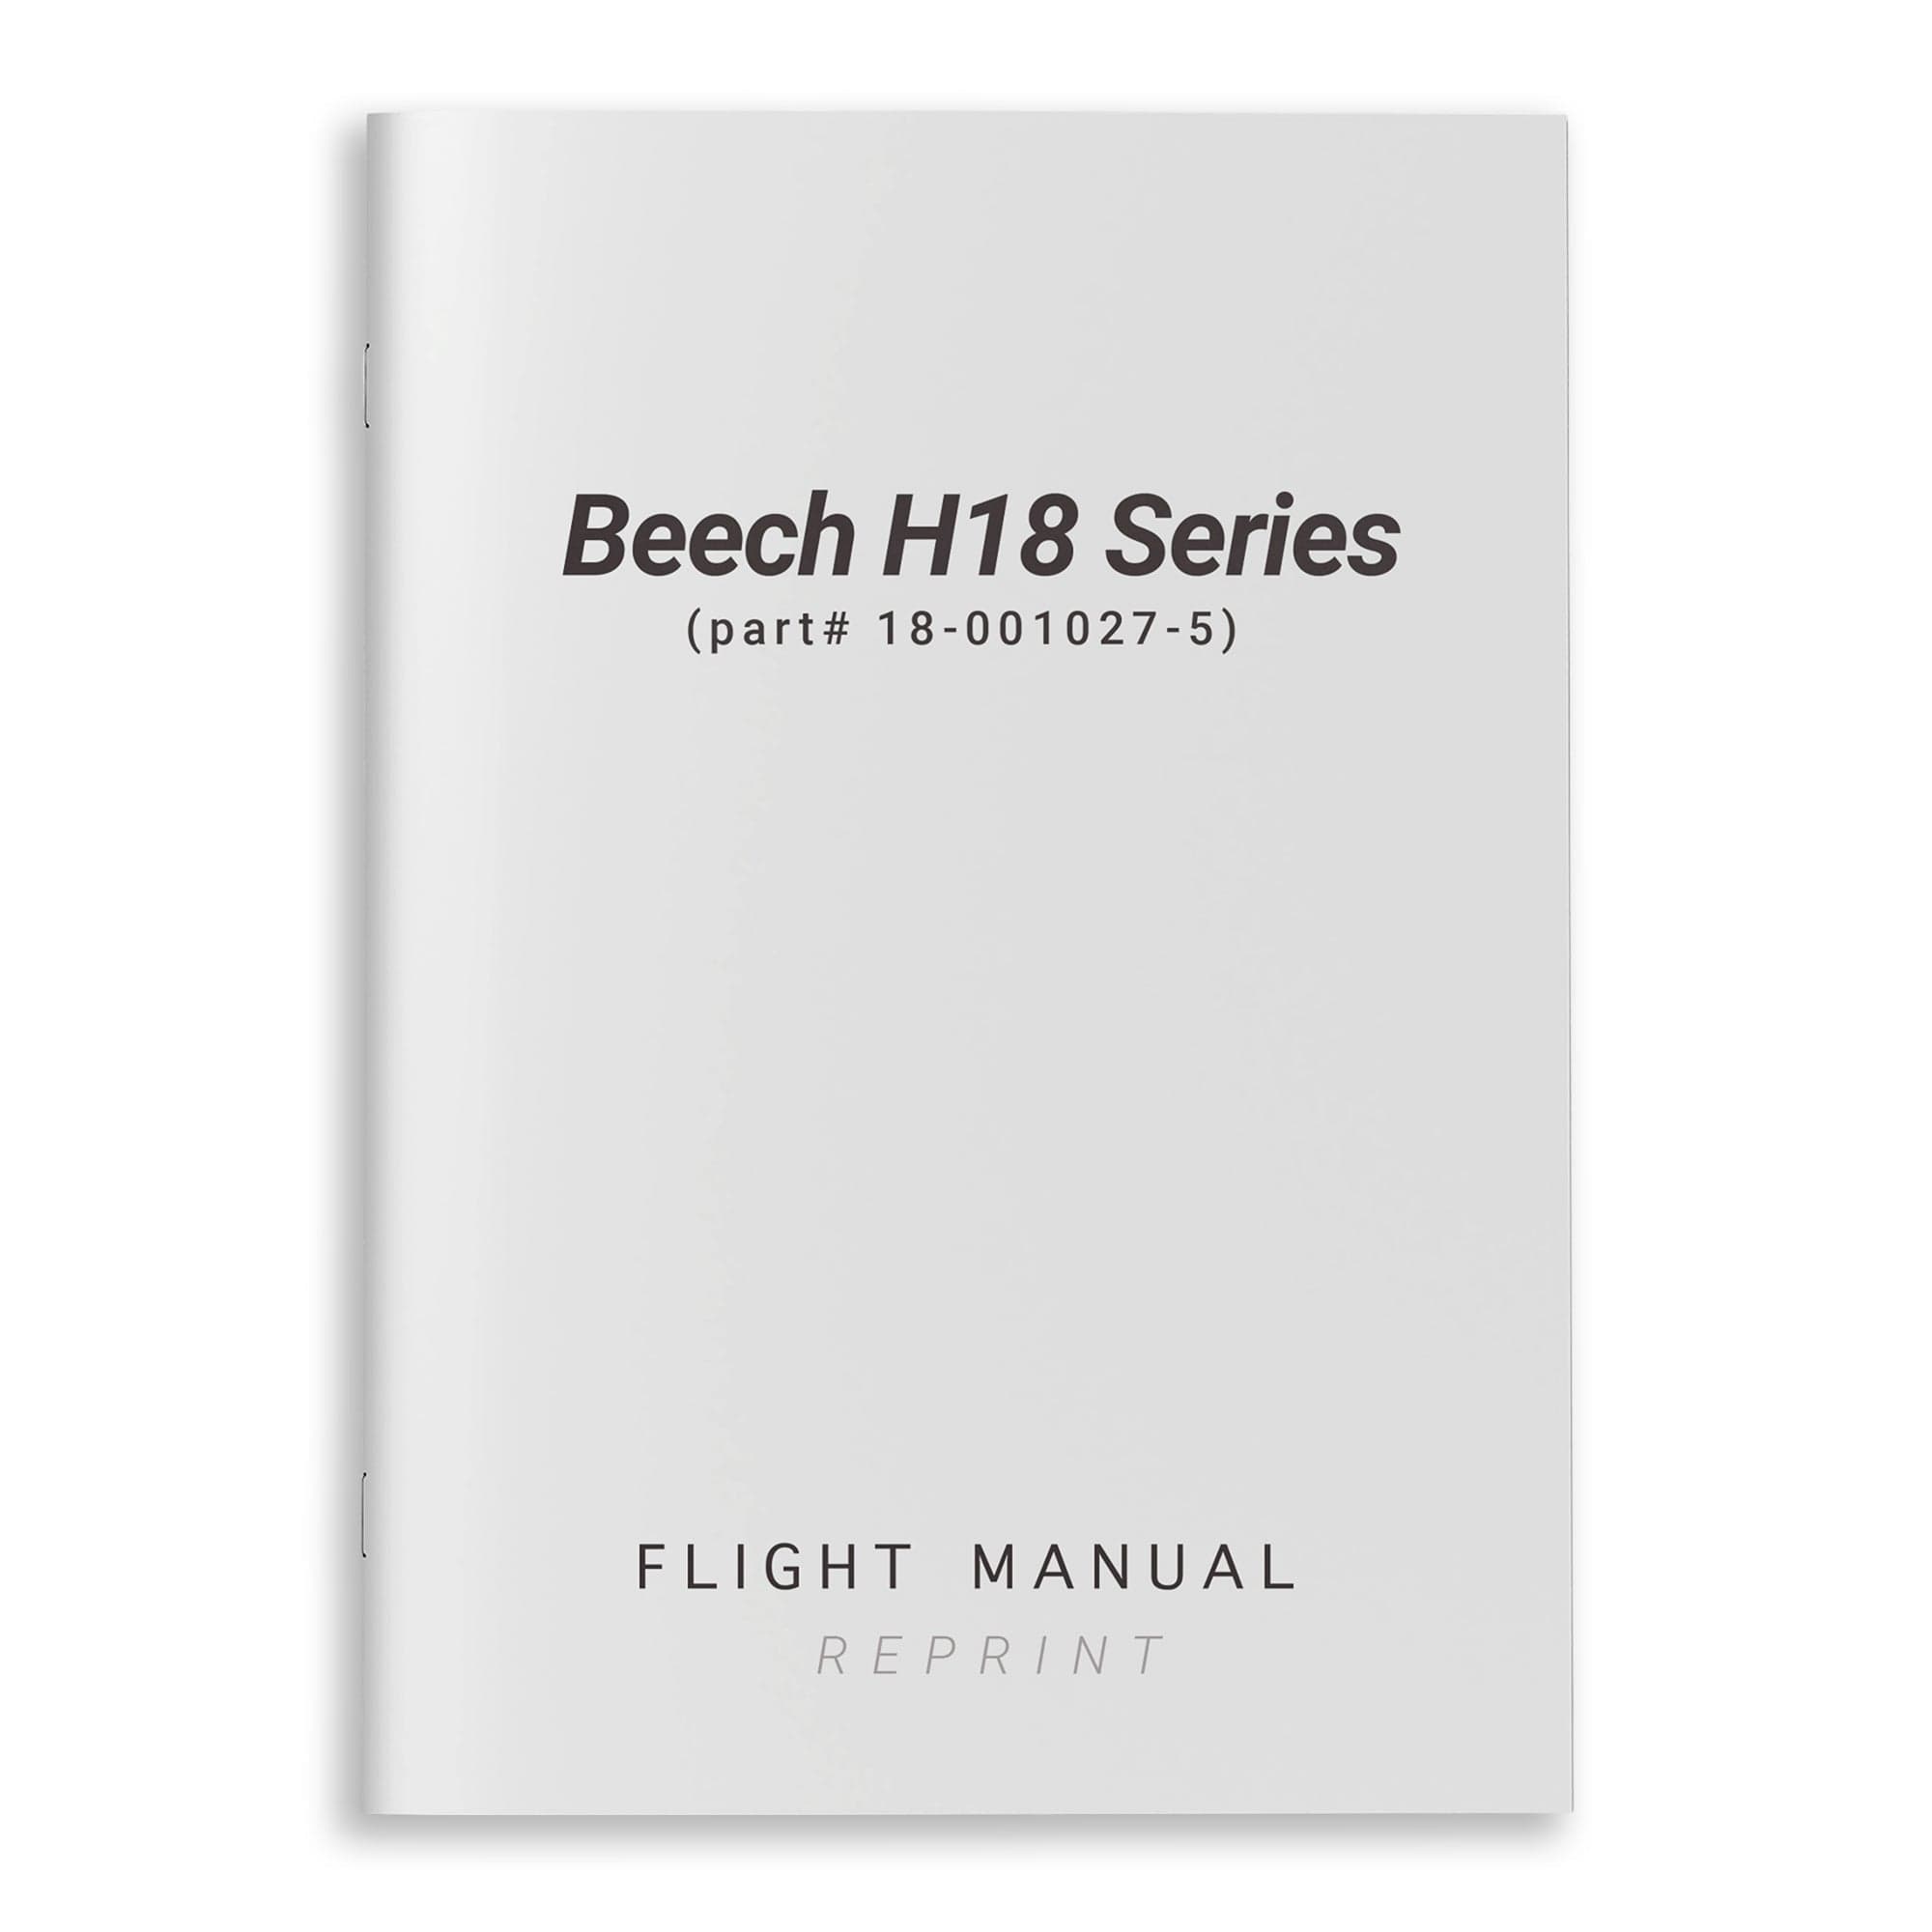 Beech H18 Series Flight Manual (part# 18-001027-5)